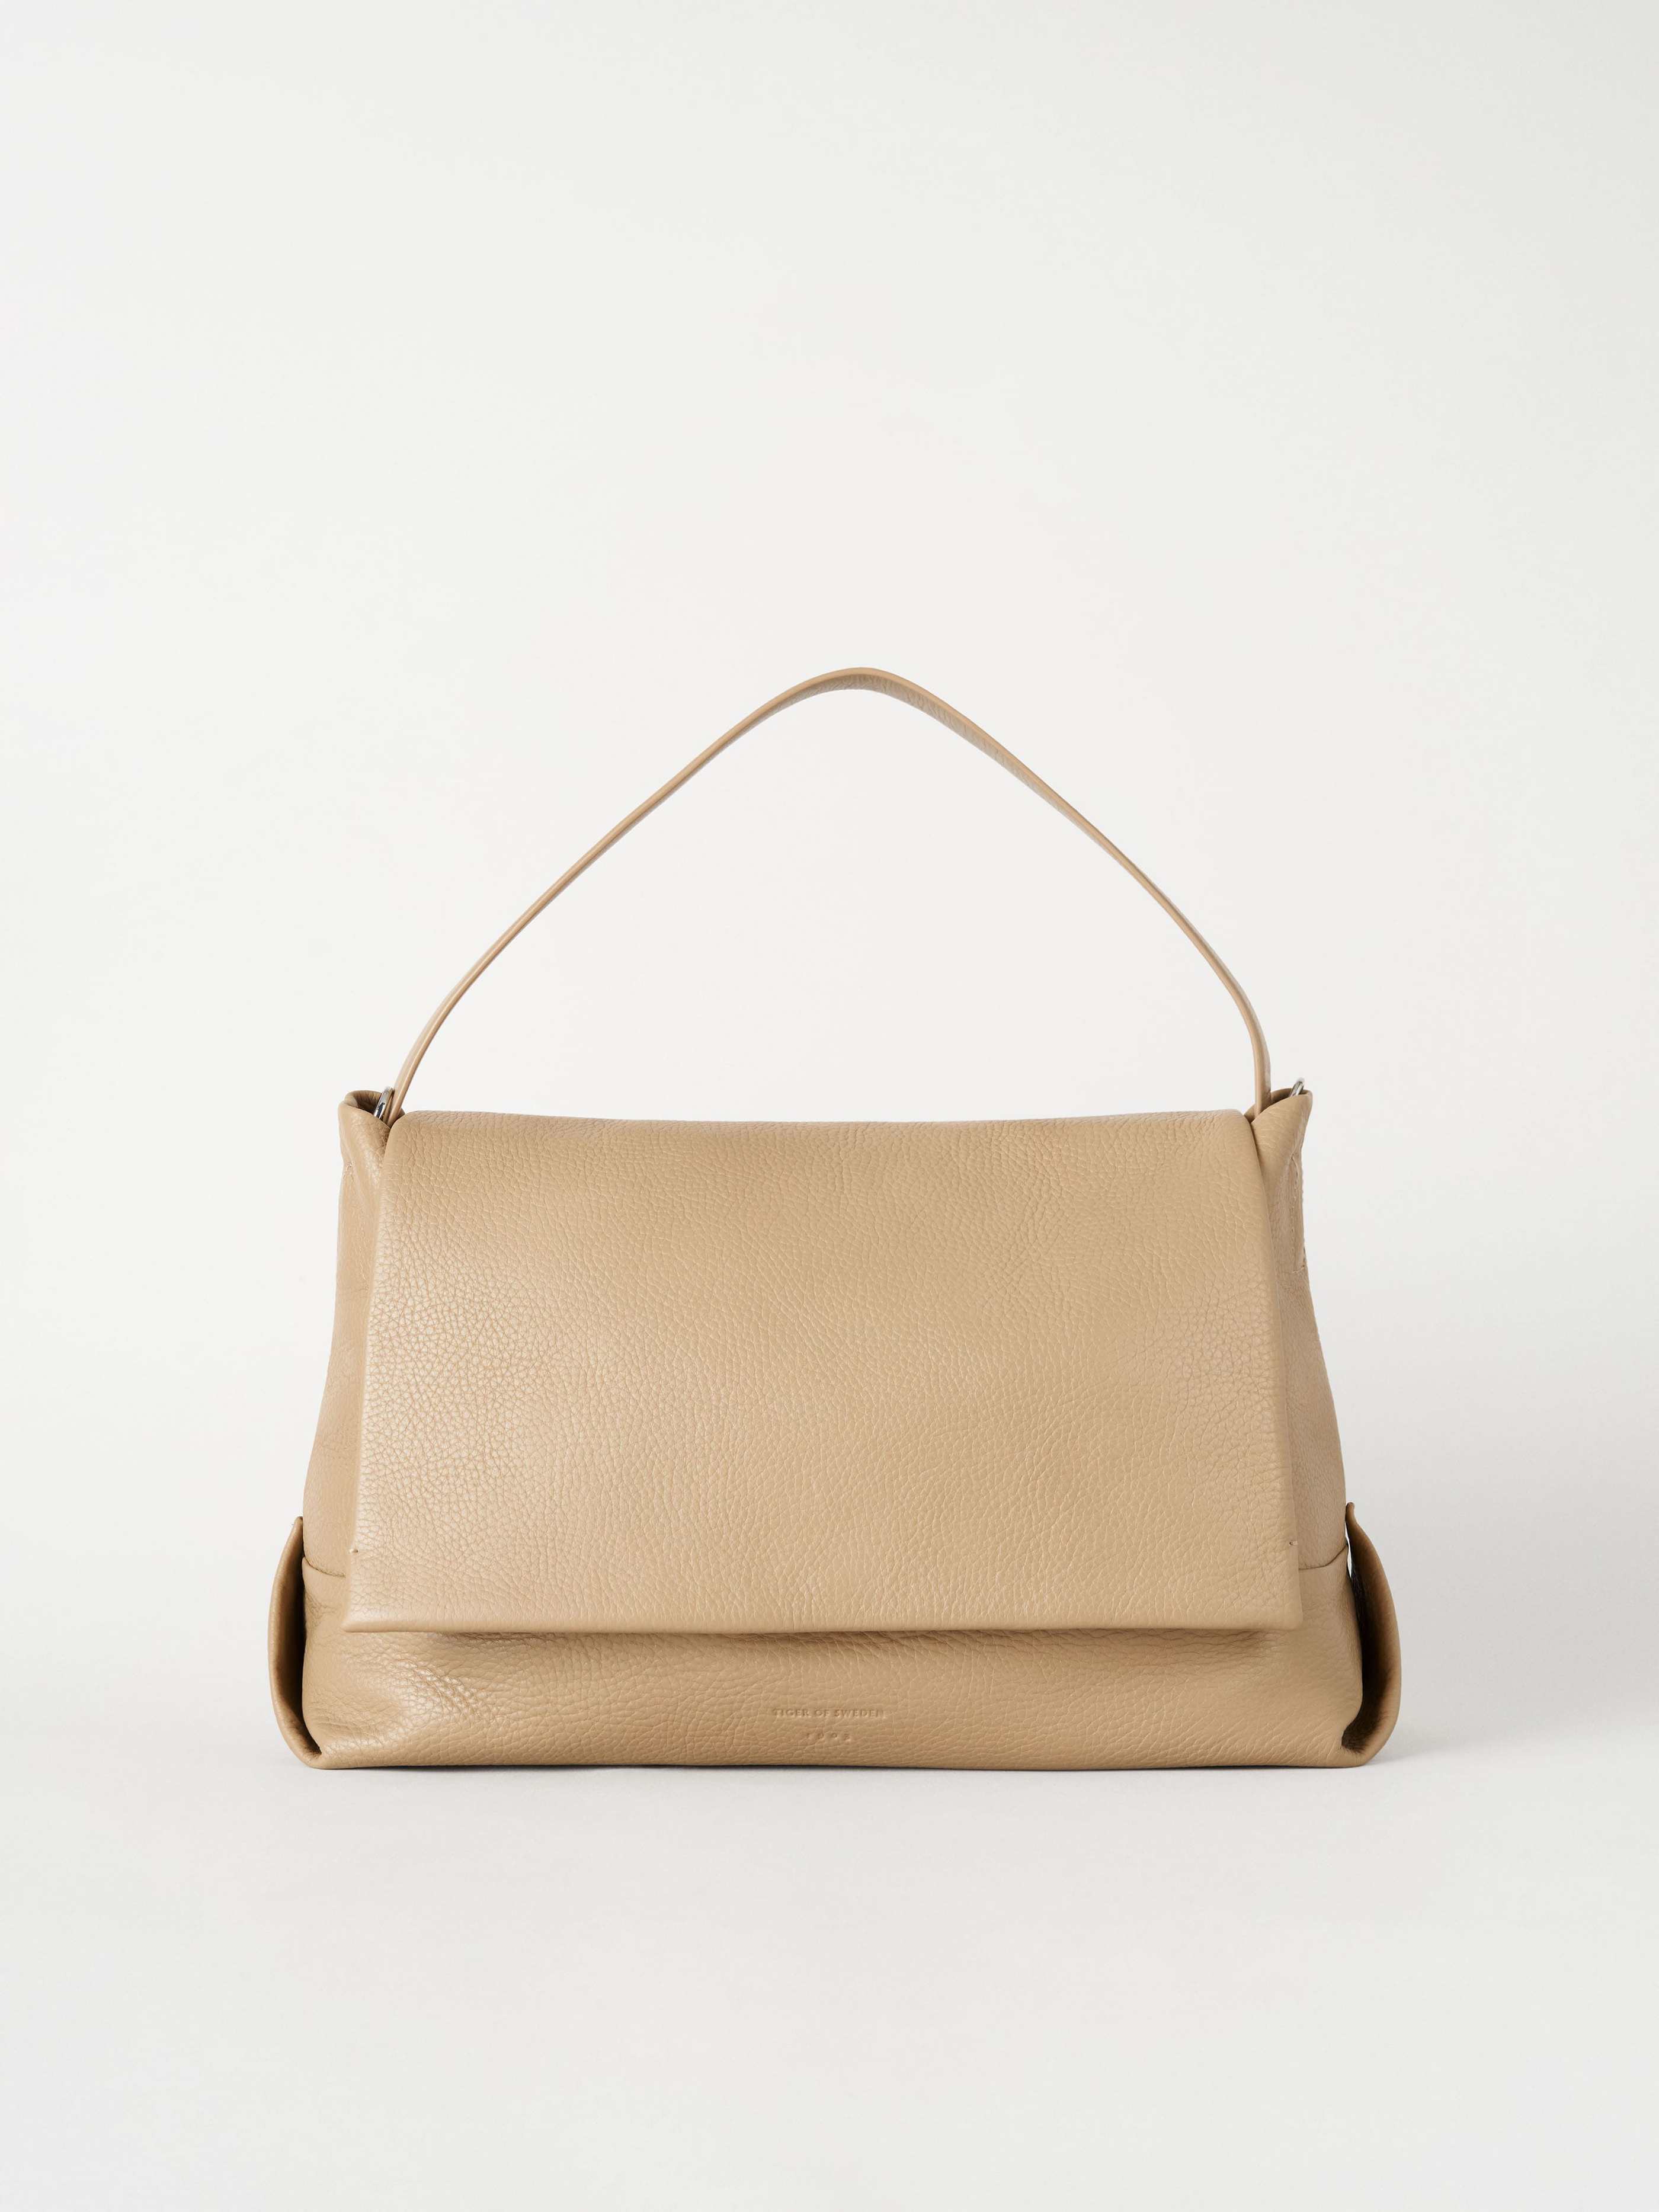 Lentate Bag - Buy online